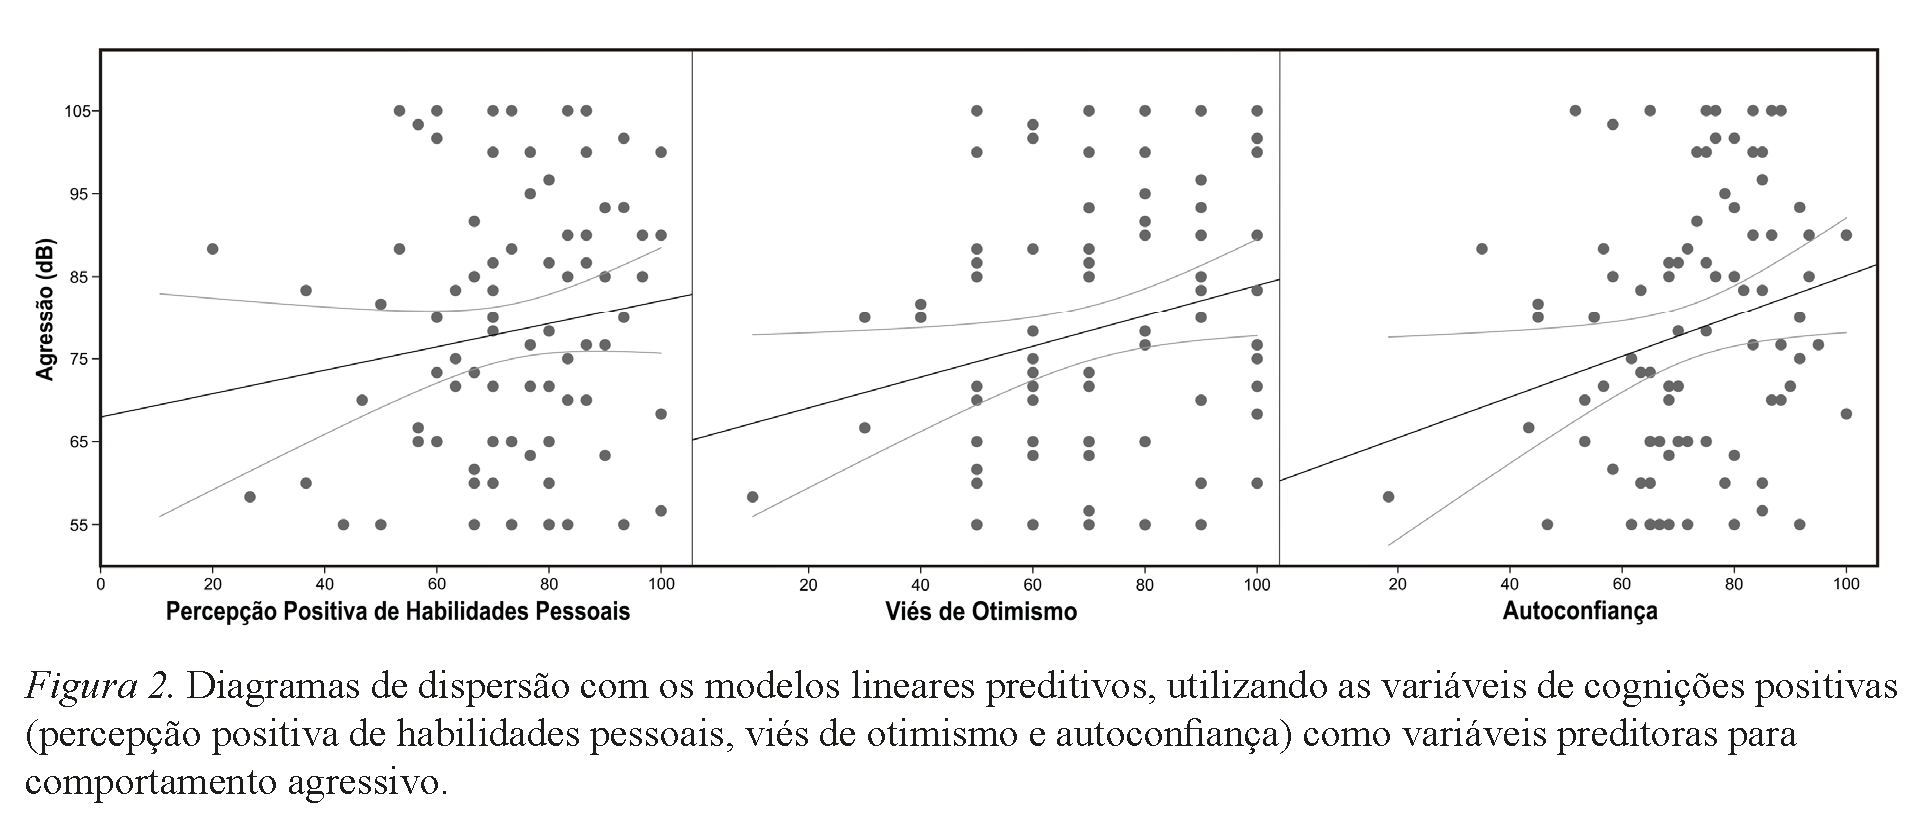 Diagramas de dispersão com os modelos lineares preditivos, utilizando as variáveis de cognições positivas (percepção positiva de habilidades pessoais, viés de otimismo e autoconfiança) como variáveis preditoras para comportamento agressivo.